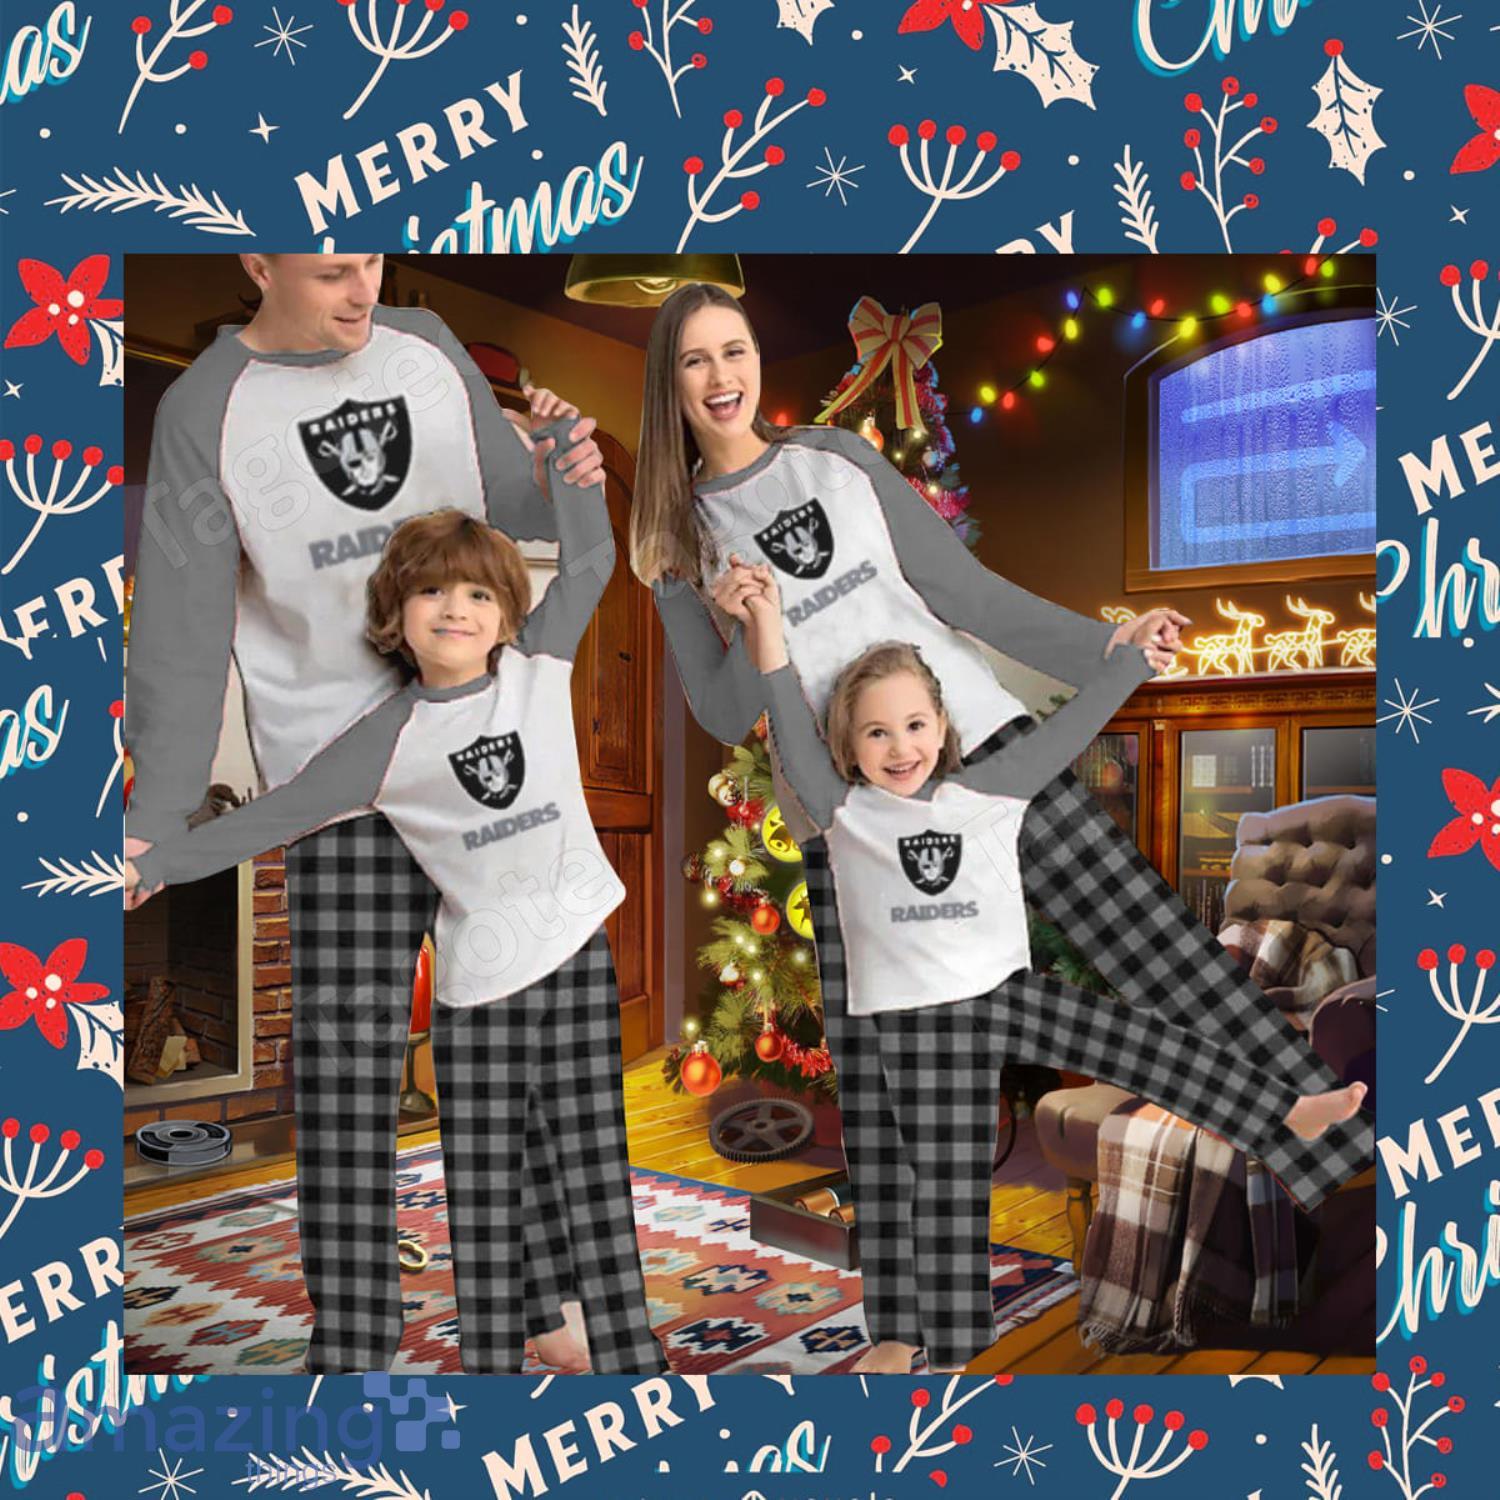 Las Vegas Raiders Pajamas Set Family Custom Name Christmas Gift Football  Team Pajamas Set - Banantees